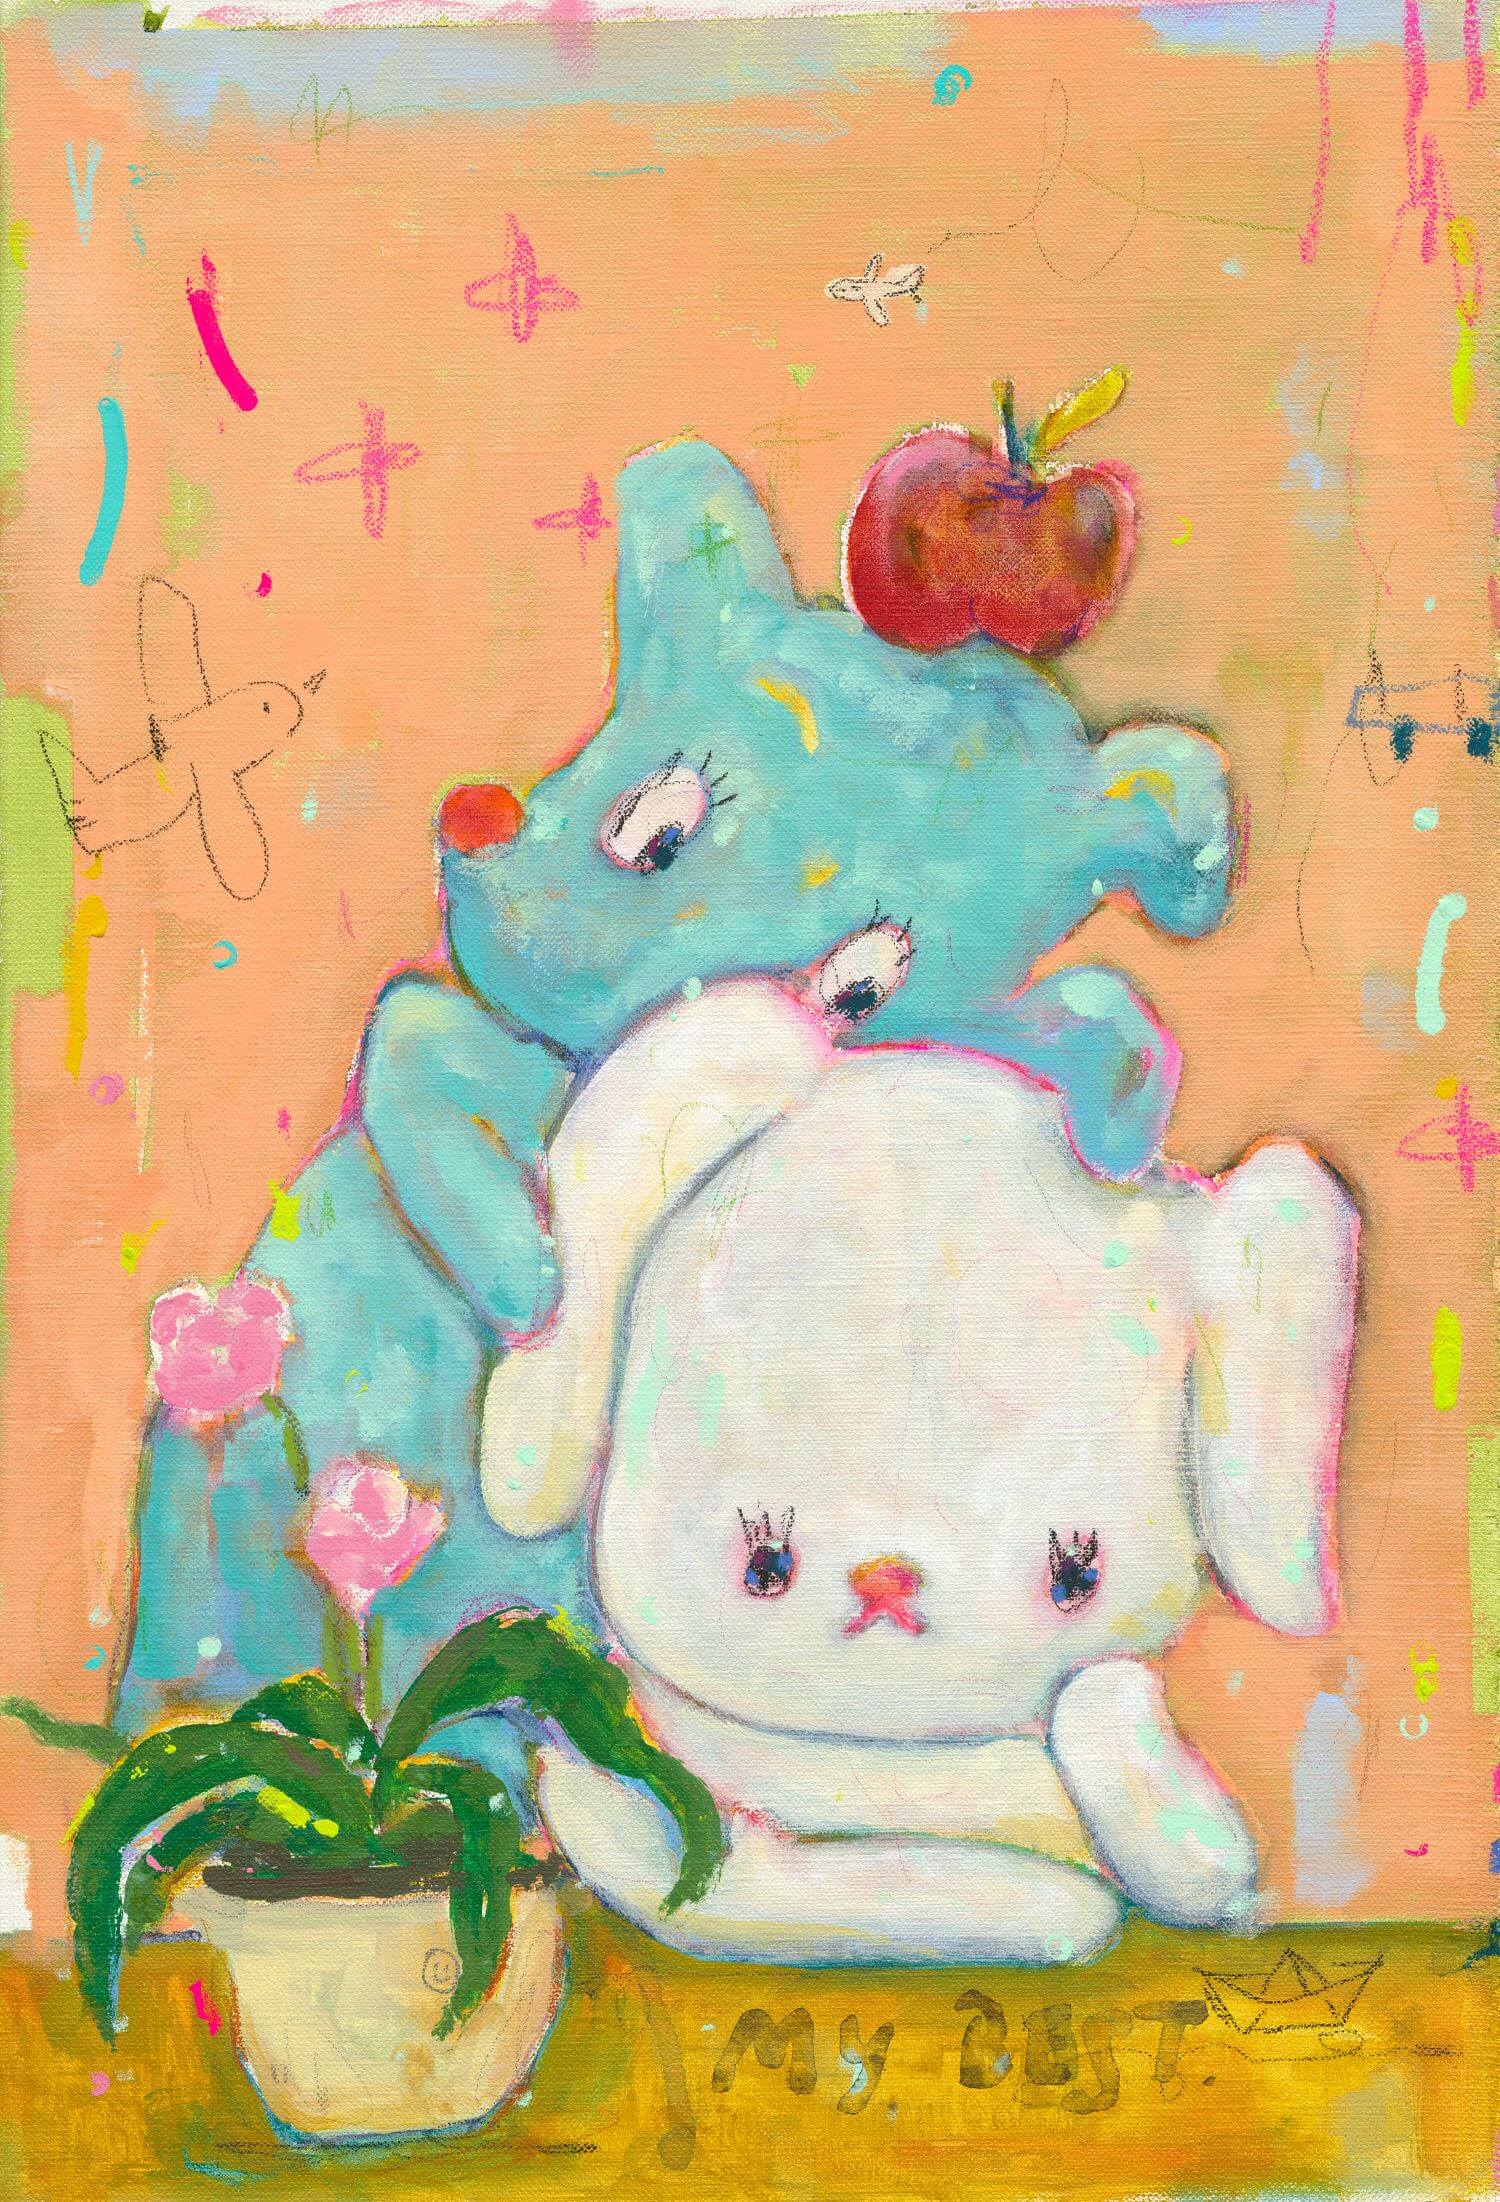 林彥良作品〈My Best Friend〉，壓克力彩、水粉、粉彩、木炭、彩色鉛筆、畫布，40 × 58 cm，2023。圖 / 索卡藝術提供